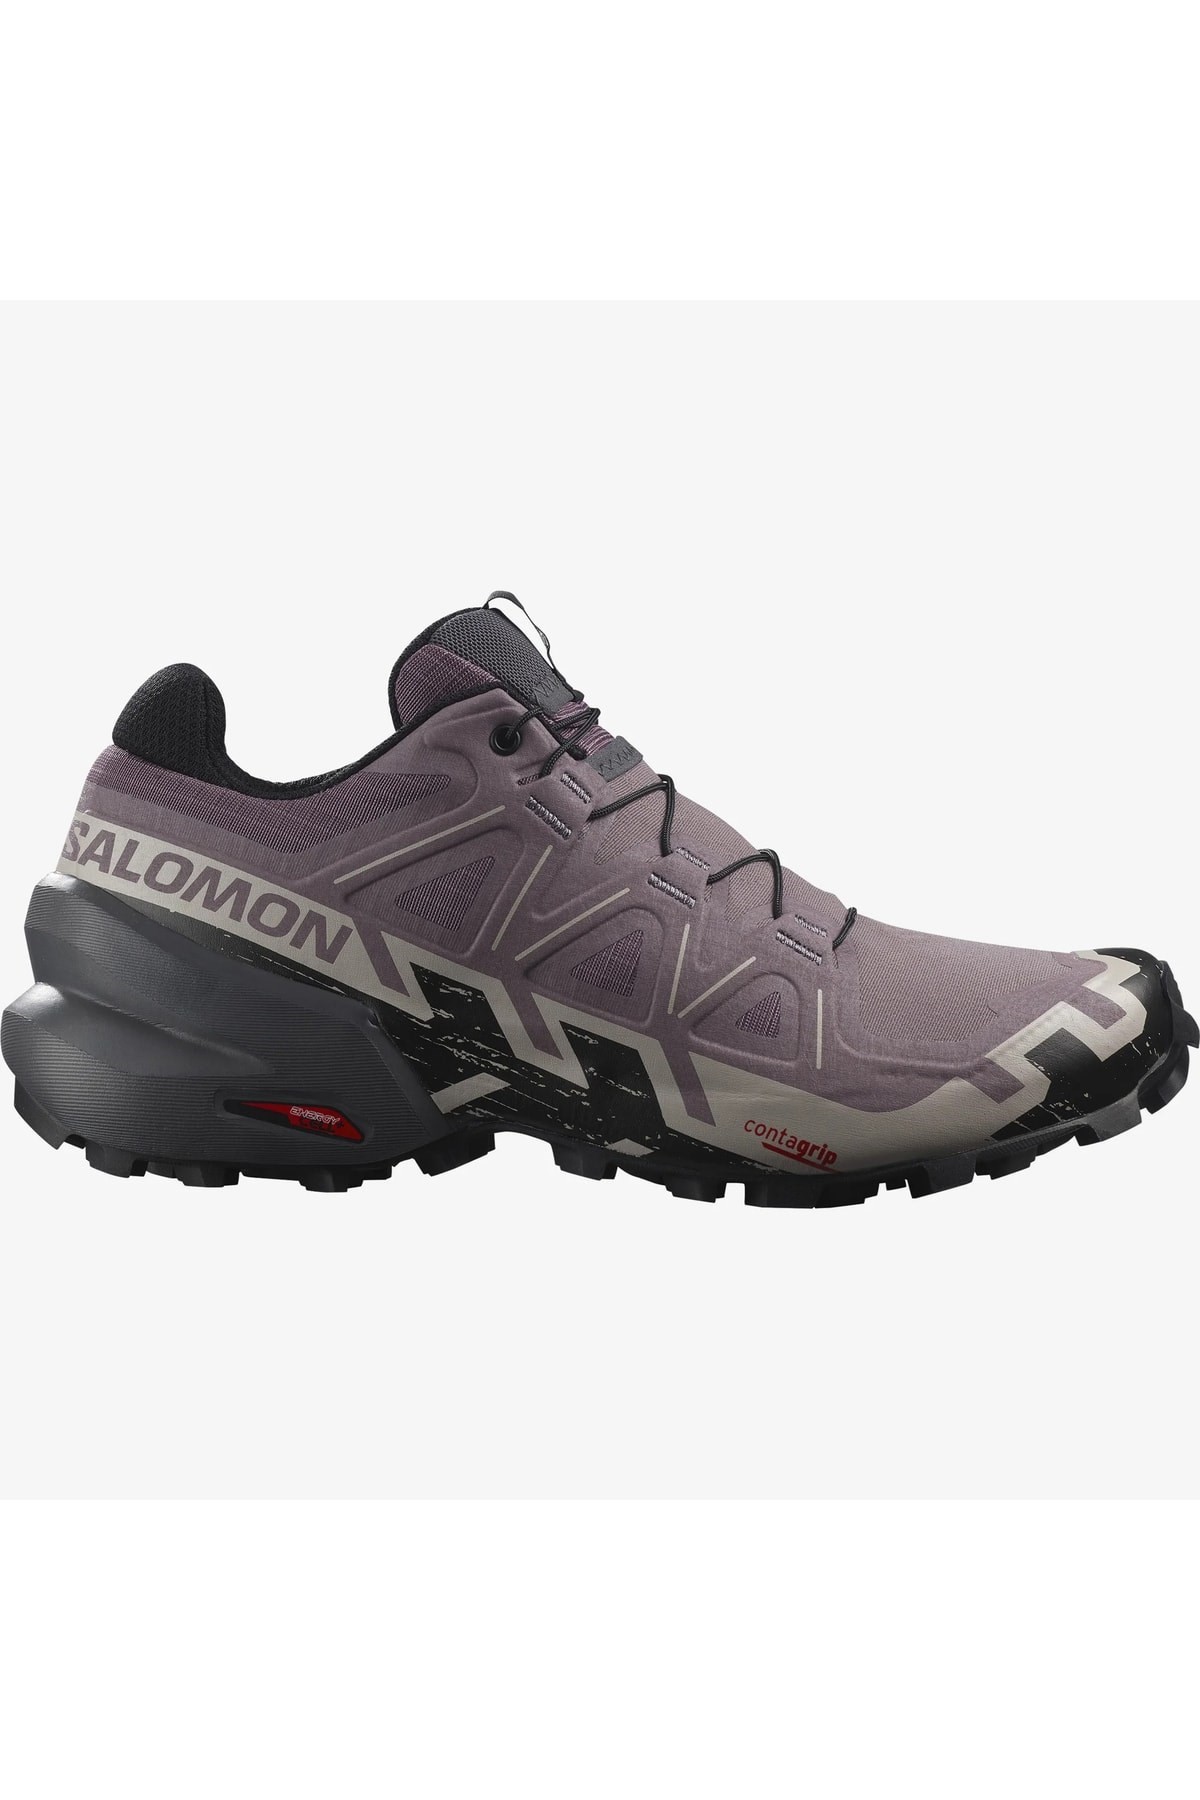 Salomon Speedcross 6 W Kadın Patika Koşu Ayakkabısı L41742900